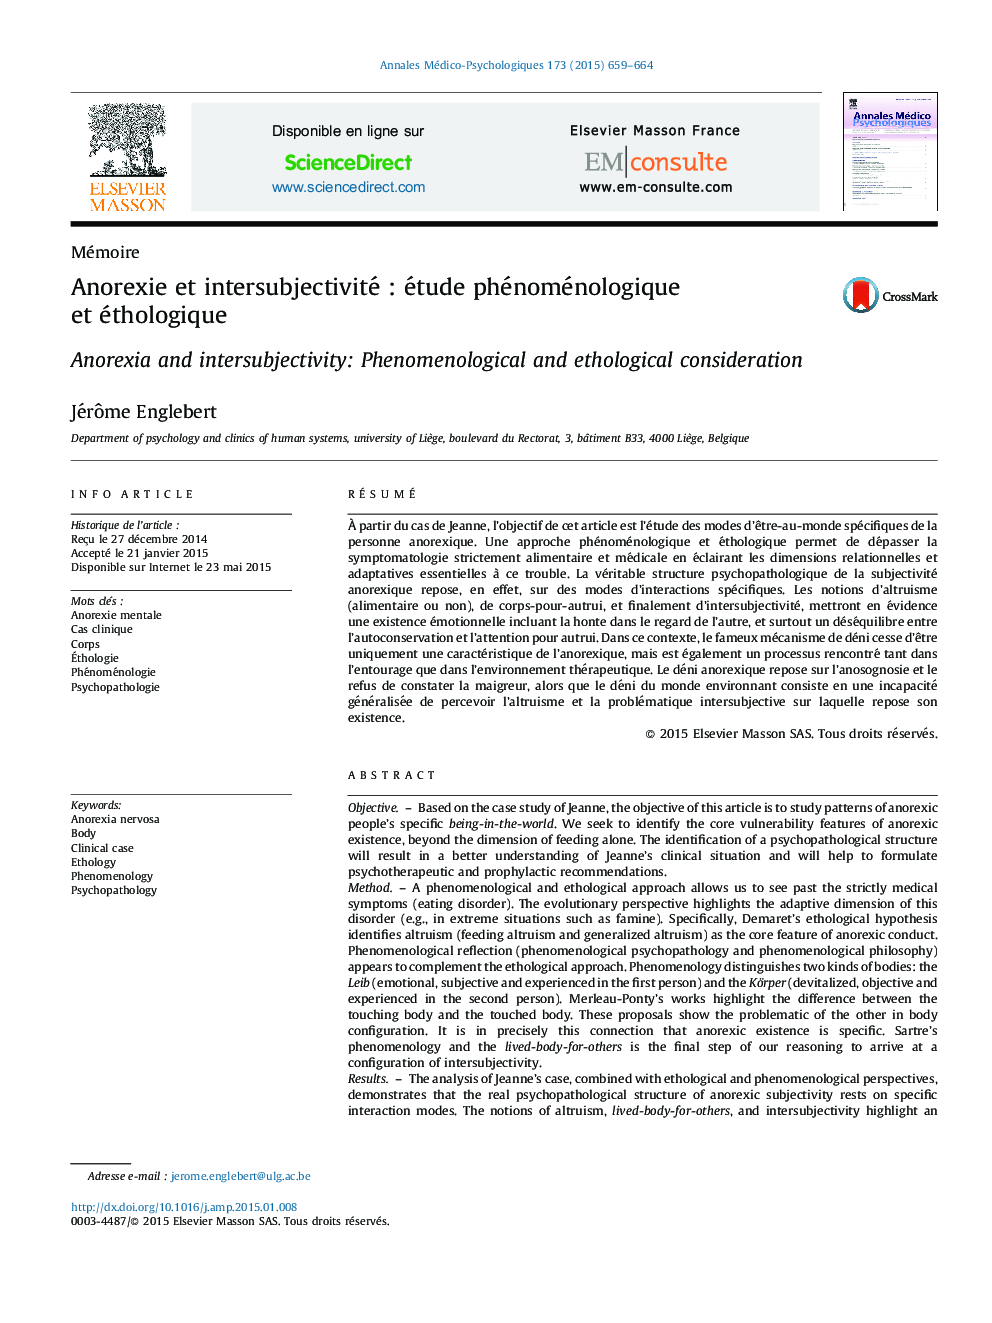 Anorexie et intersubjectivité : étude phénoménologique et éthologique